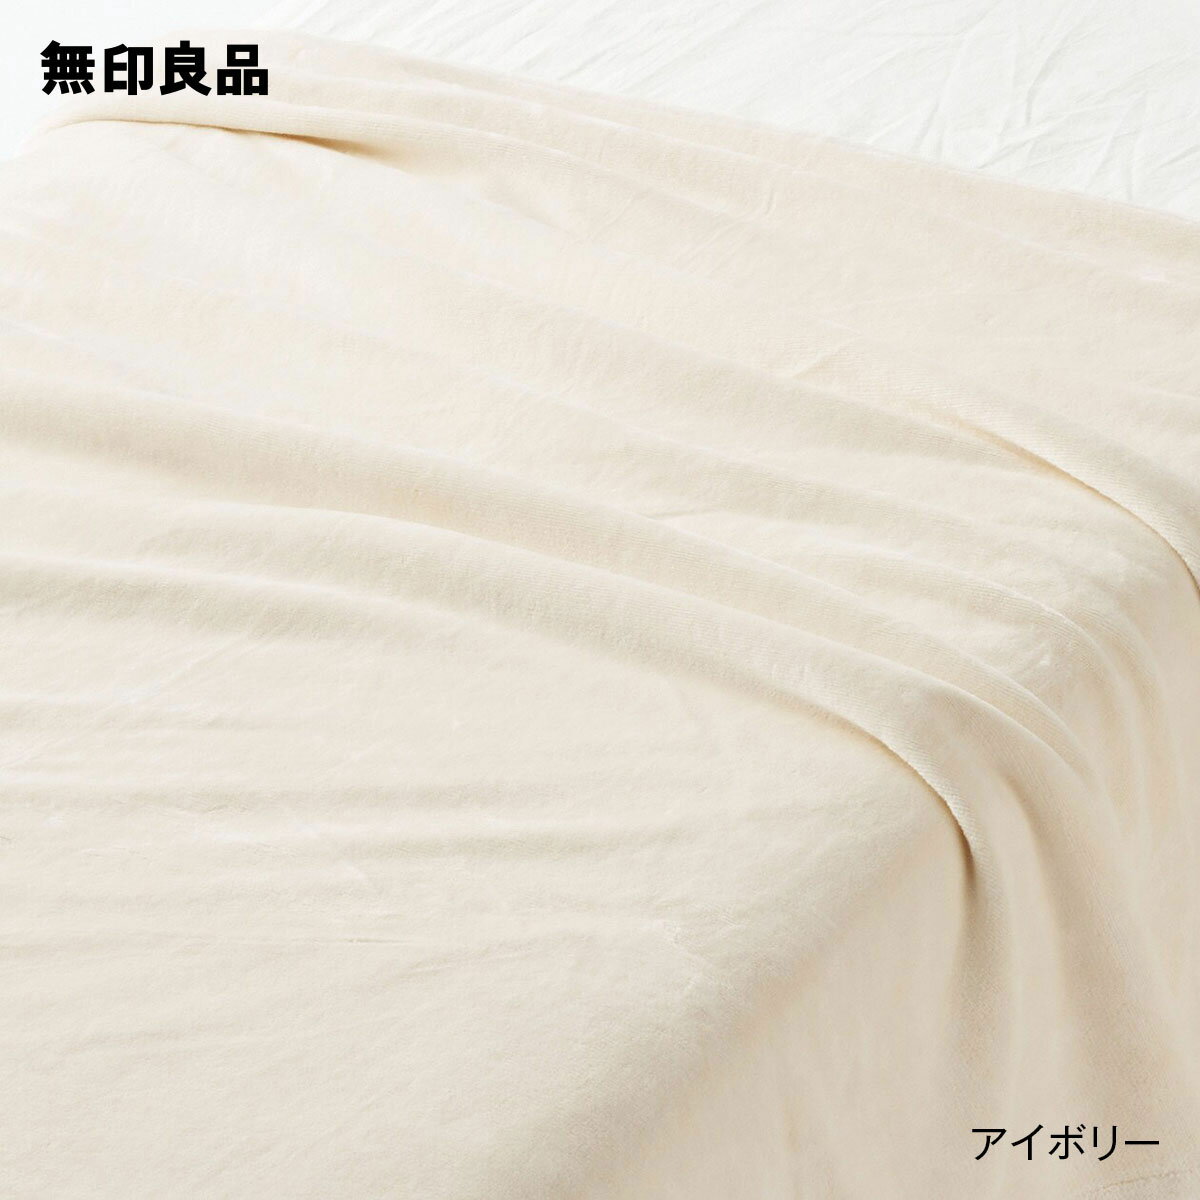 【無印良品 公式】【ダブル】あったか綿 毛布・180 200cm